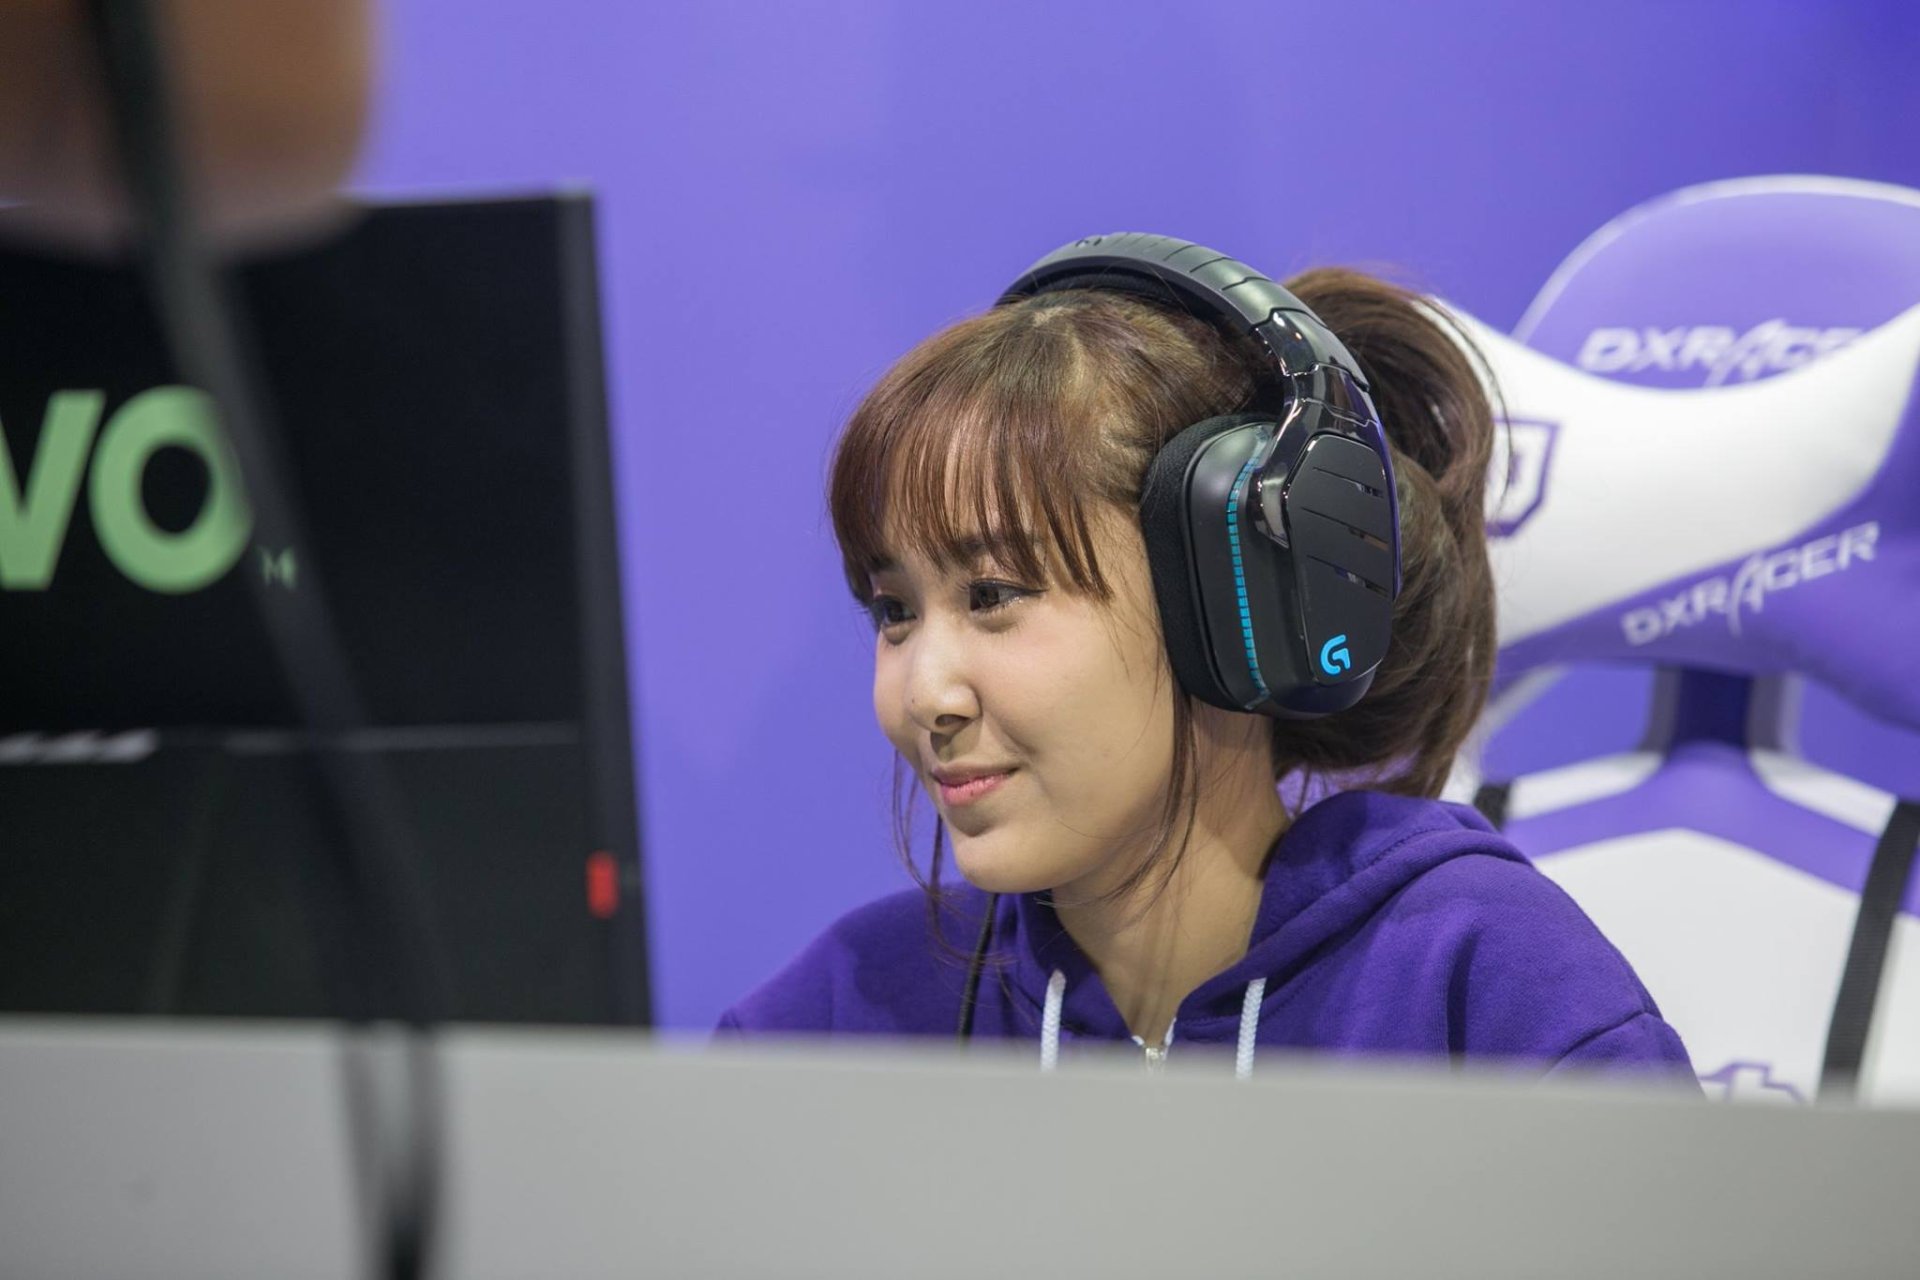 สัมภาษณ์สาวไทยใน Twitch “PinkGuschu” ผู้สตรีมเกมนานเป็น 10 ชั่วโมง!